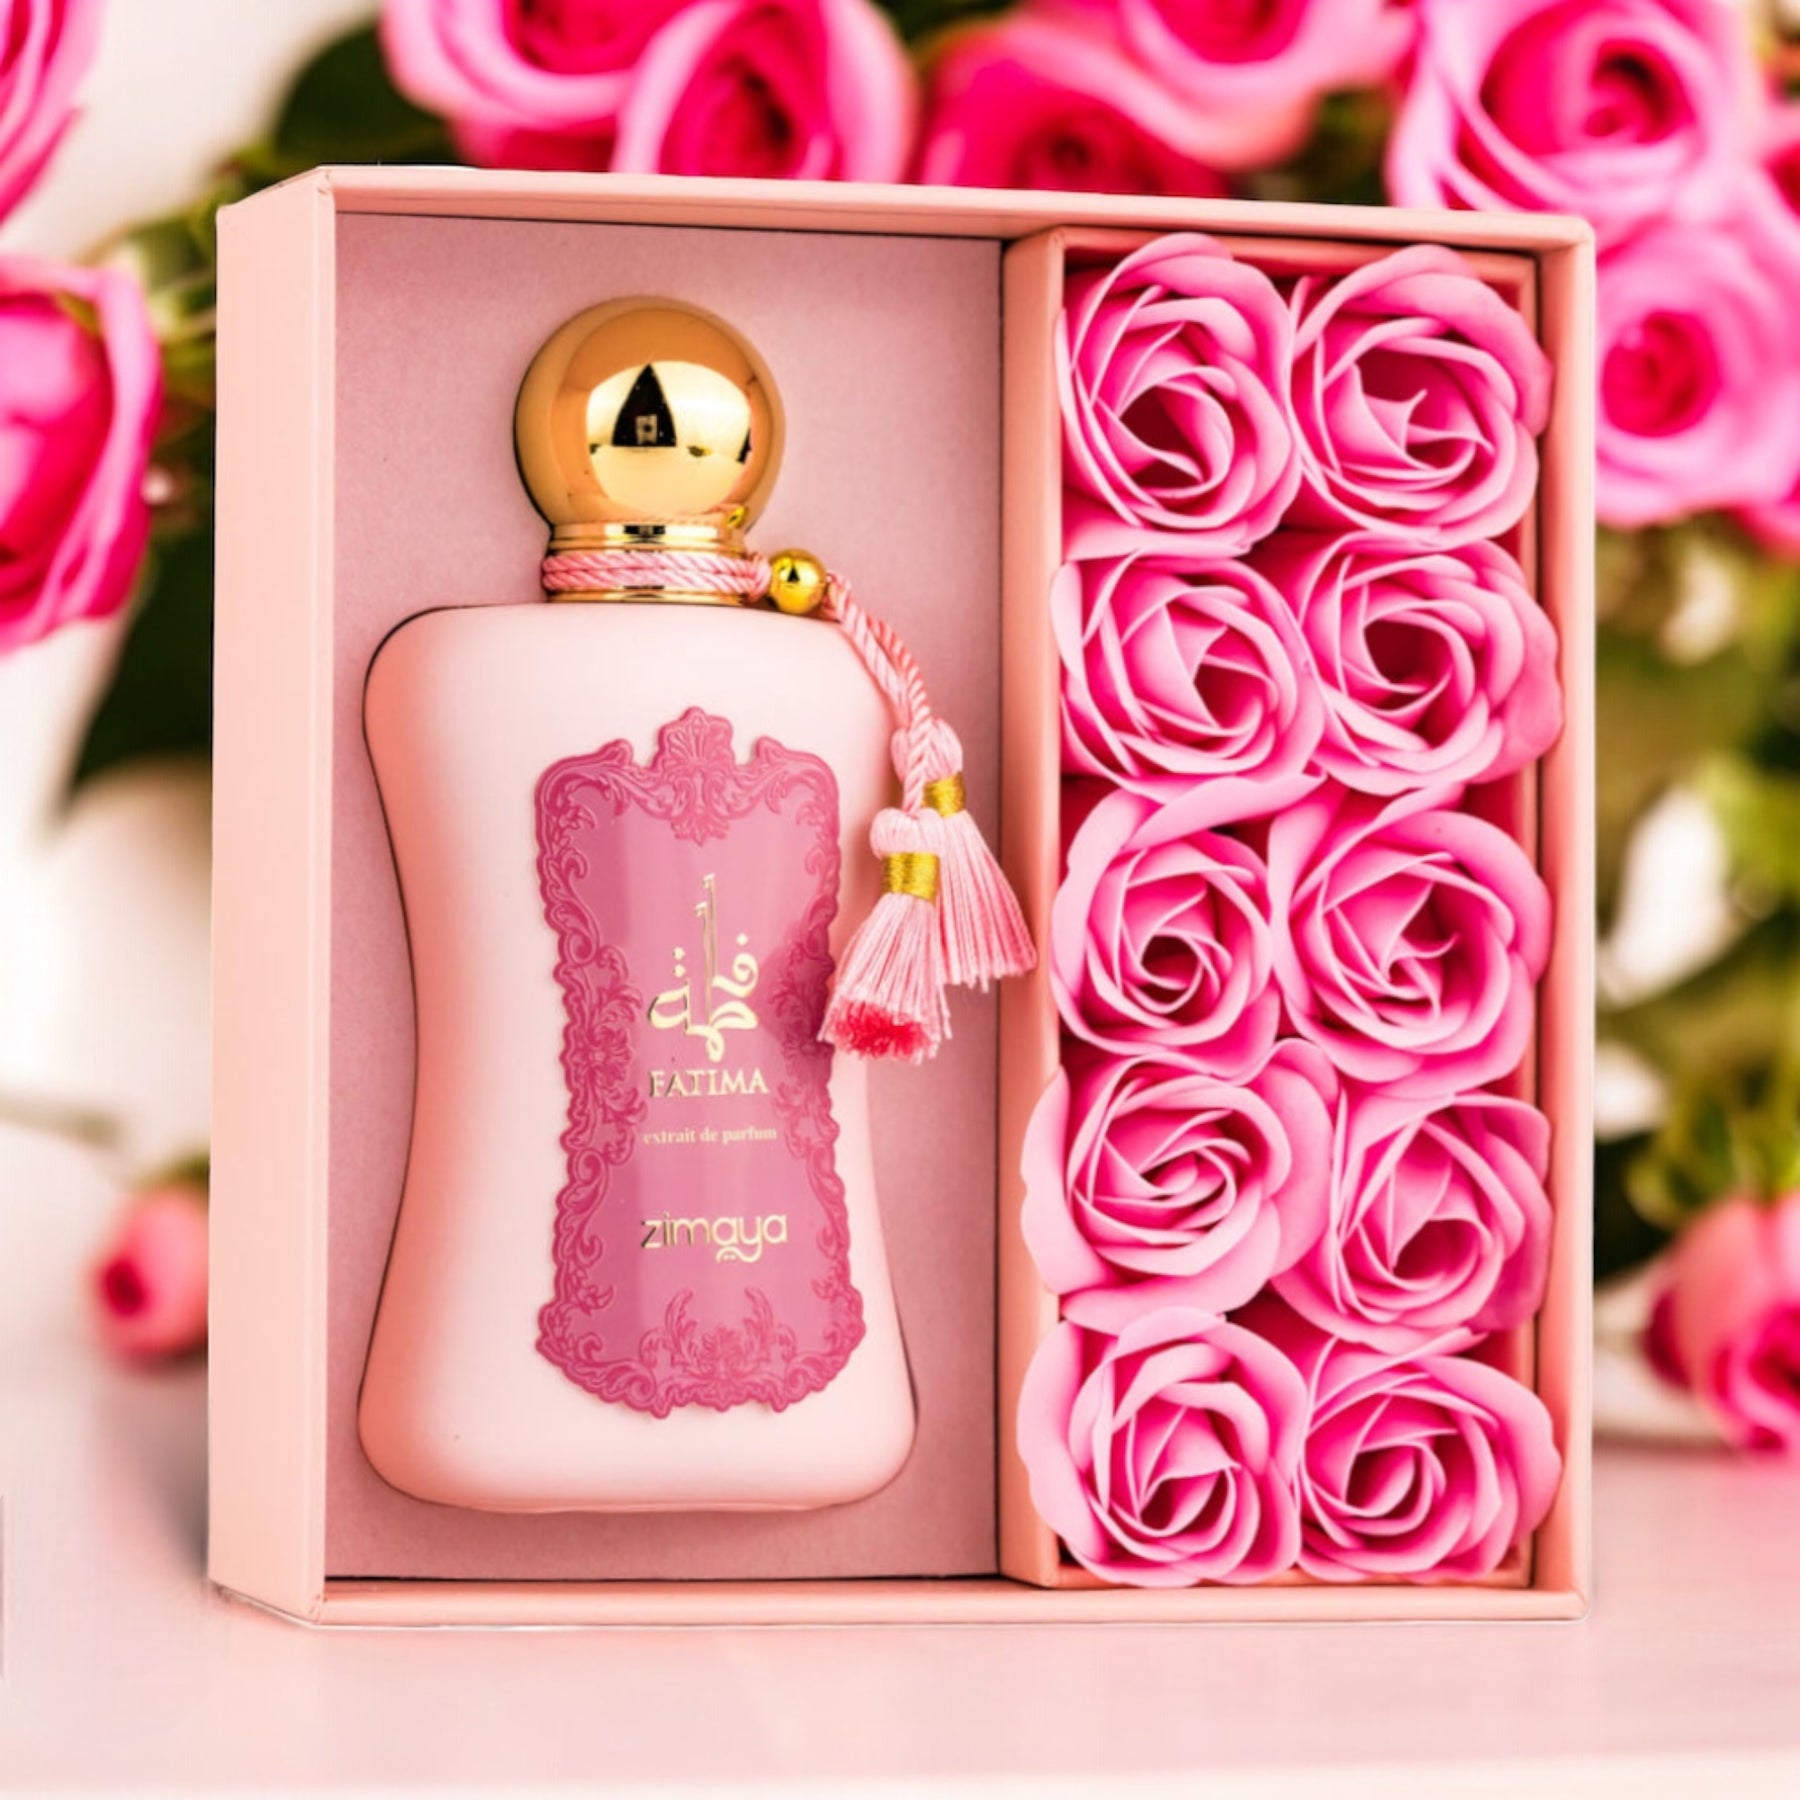 Fatima Ladies By Zimaya Extrait De Parfum 3.38 oz Women